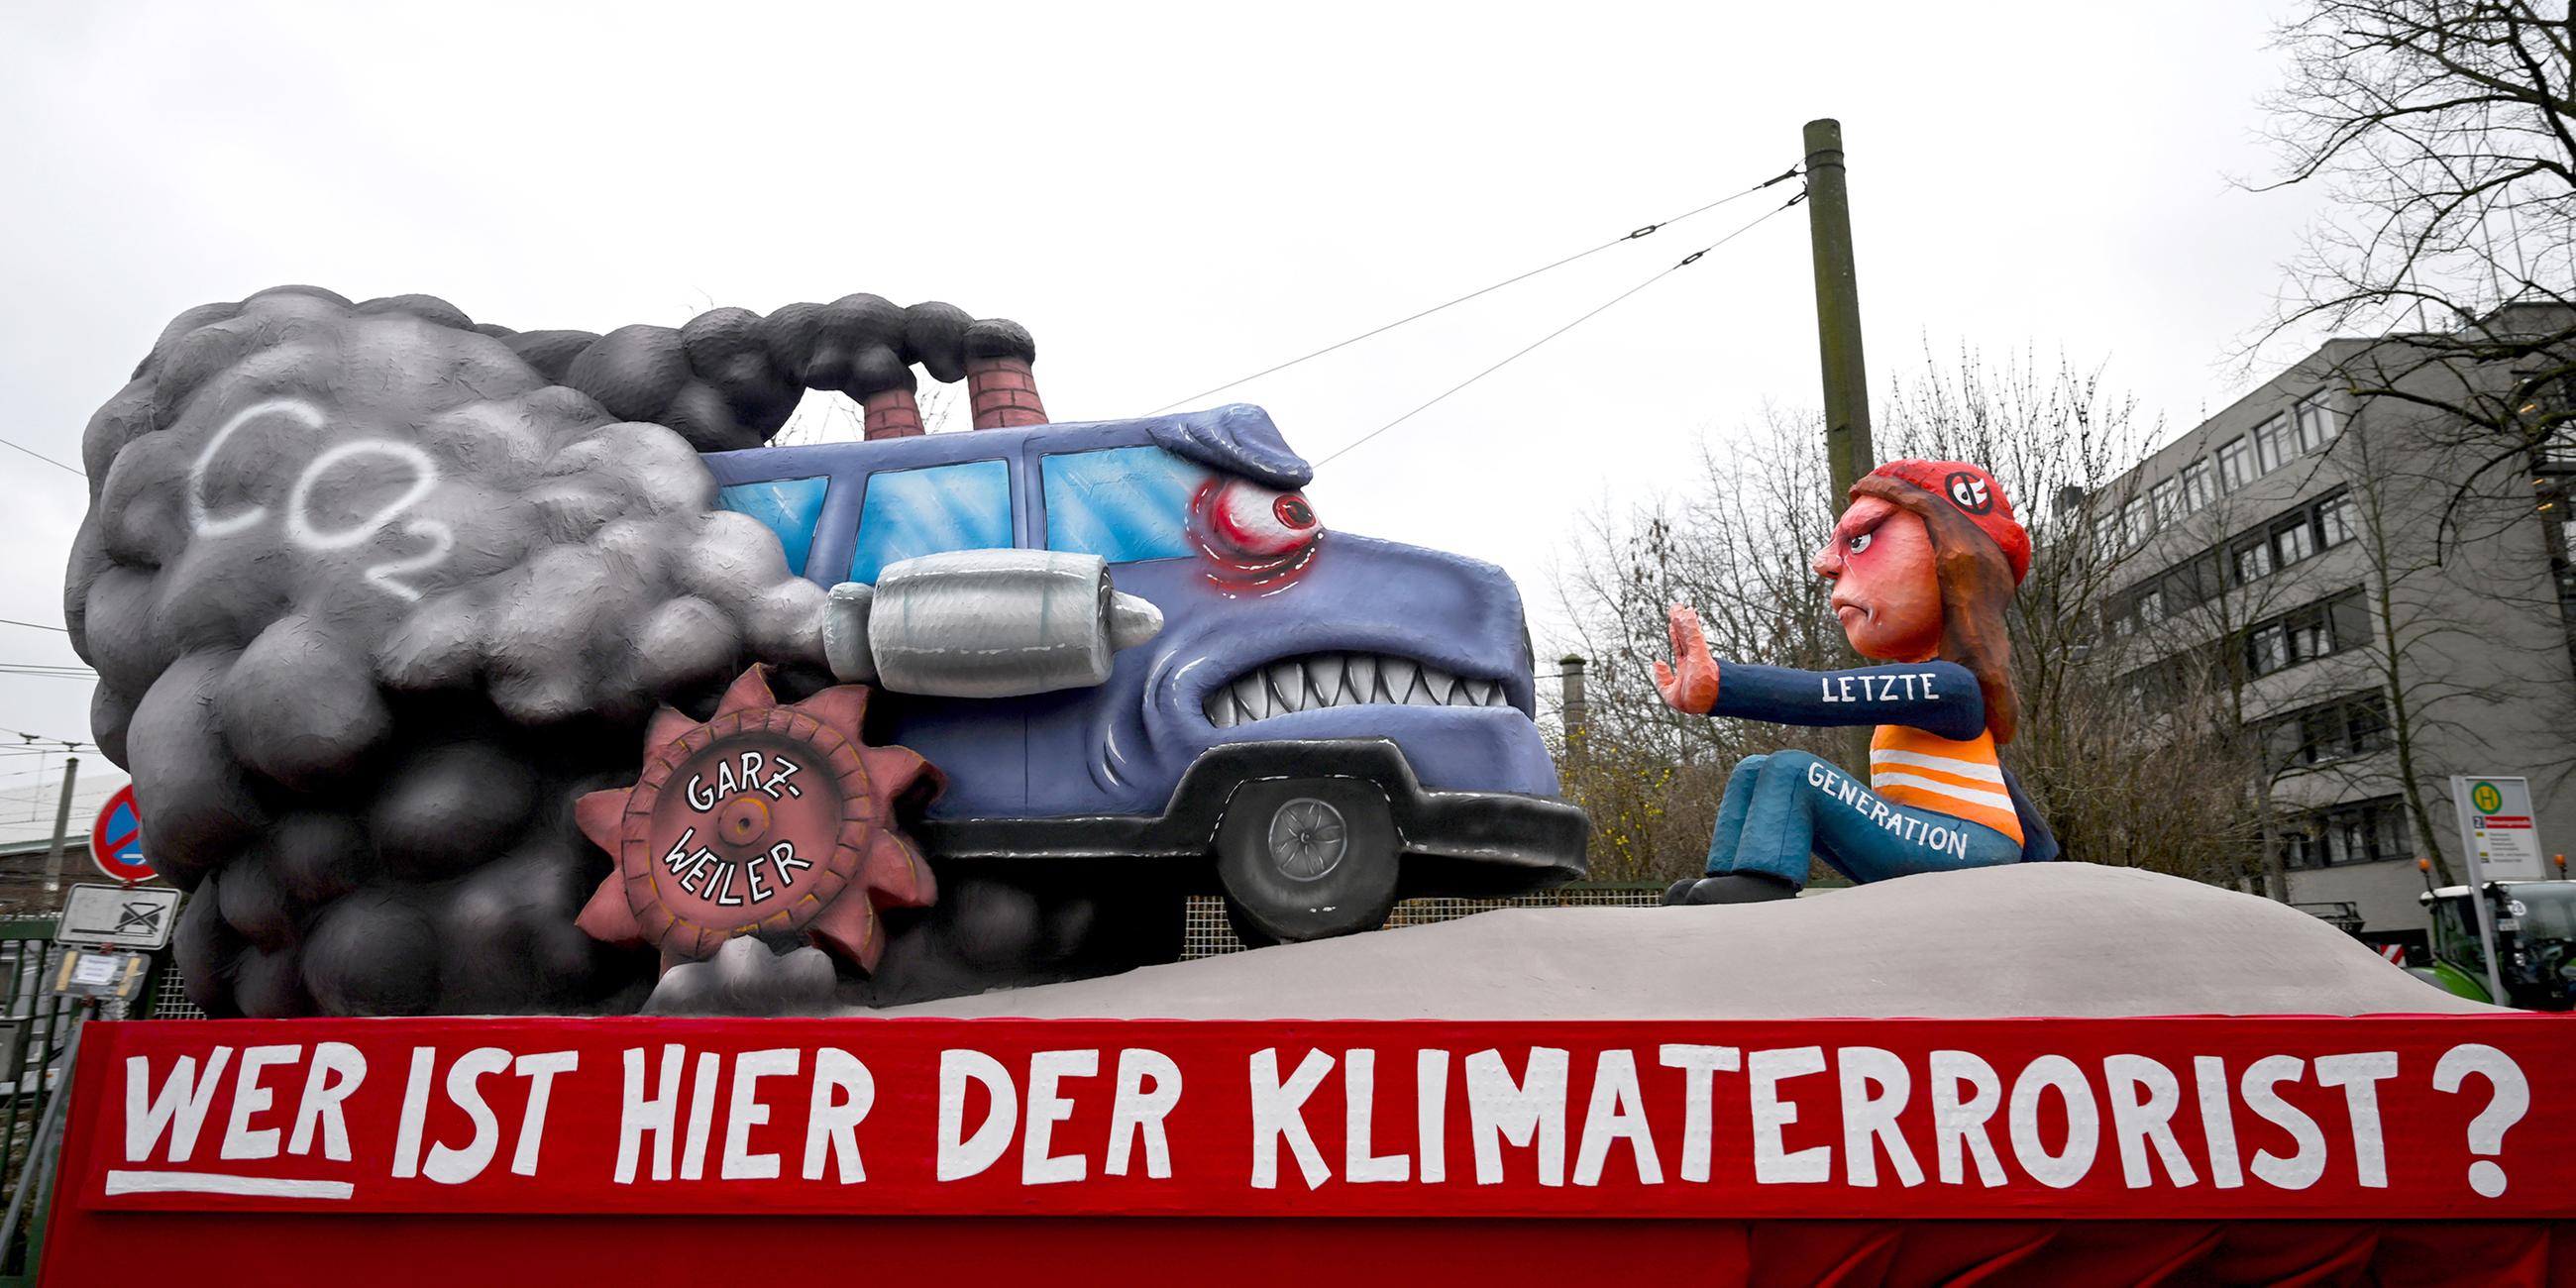 Ein Mottowagen mit der Aufschrift "Wer ist hier der Klimaterrorist?" zeigt einen Aktivisten der letzten Generation und ein qualmends Auto.